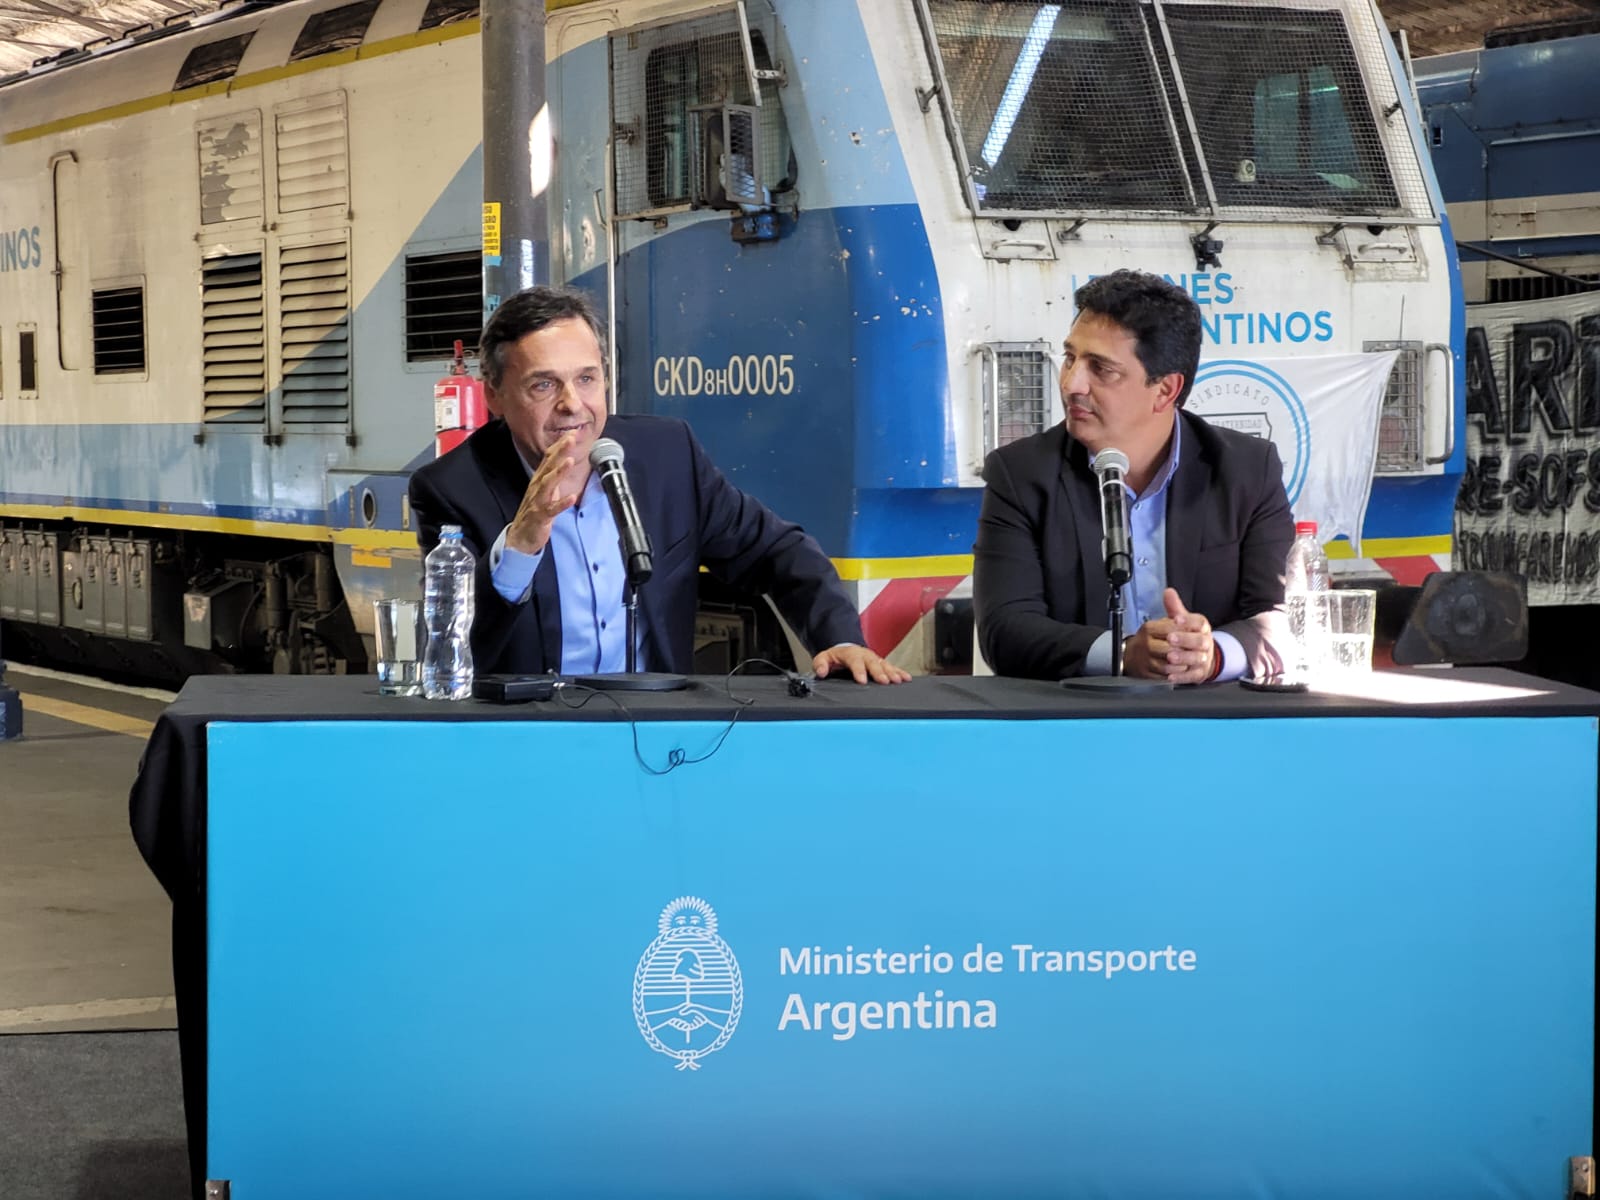 Diego Giuliano, desde el tren: “Estamos pensando en agregar paradas intermedias a lo largo de Funes”